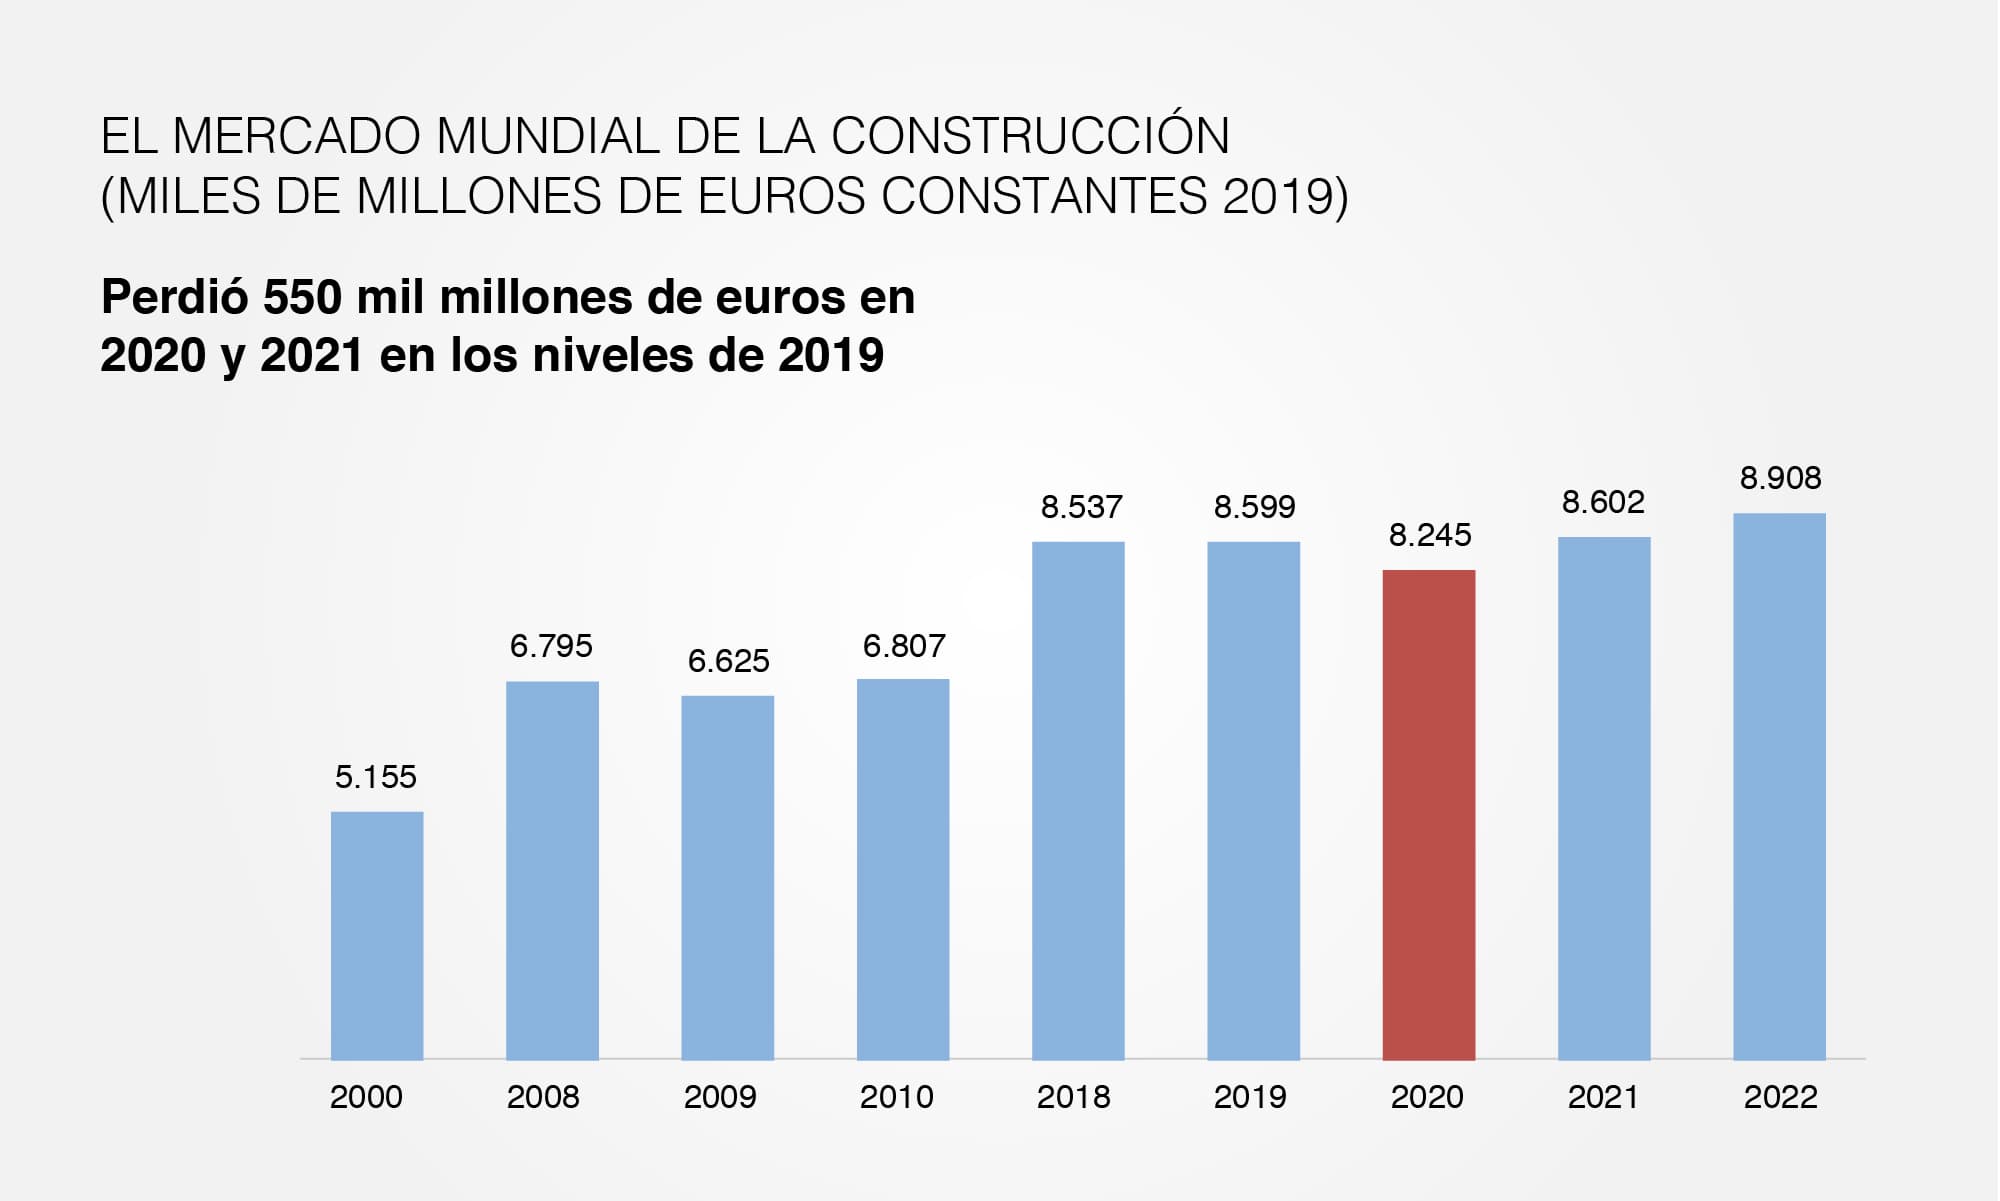 El mercado mundial de la construcción (miles de millones de euros constantes 2019)